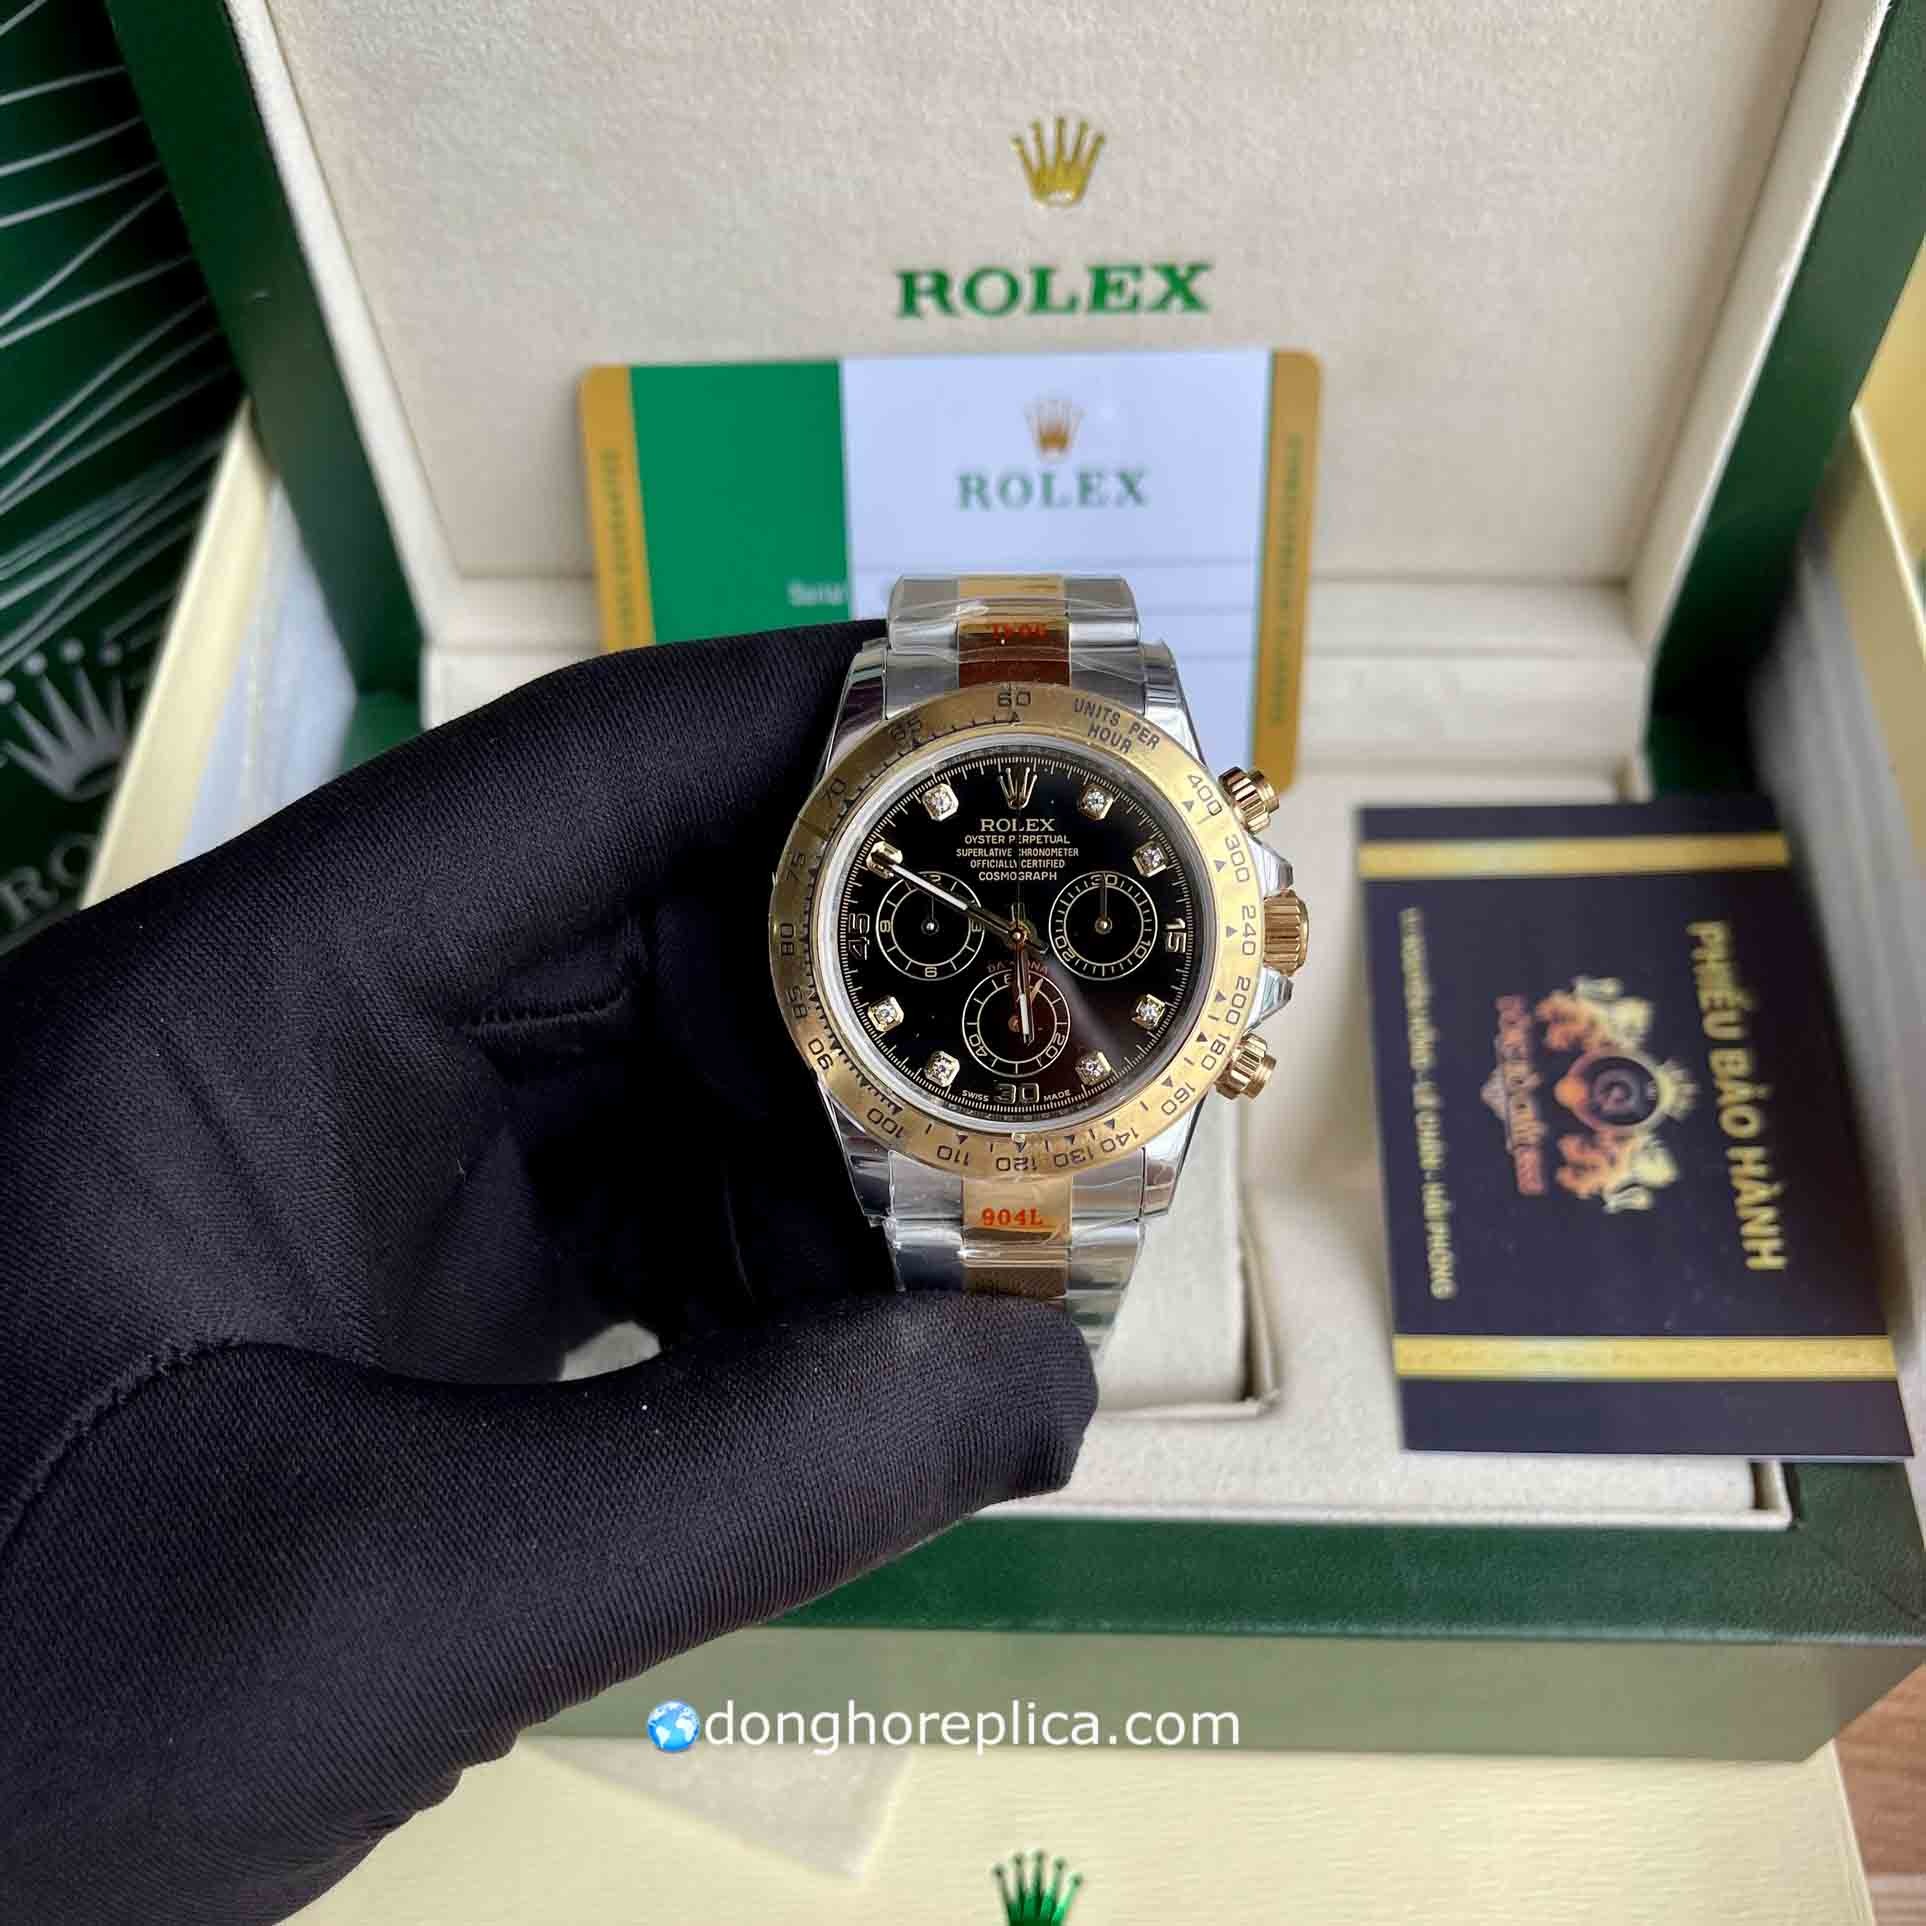 Đồng hồ Rolex siêu cấp Replica 1:1 bán chạy nhất tại Hà Nội